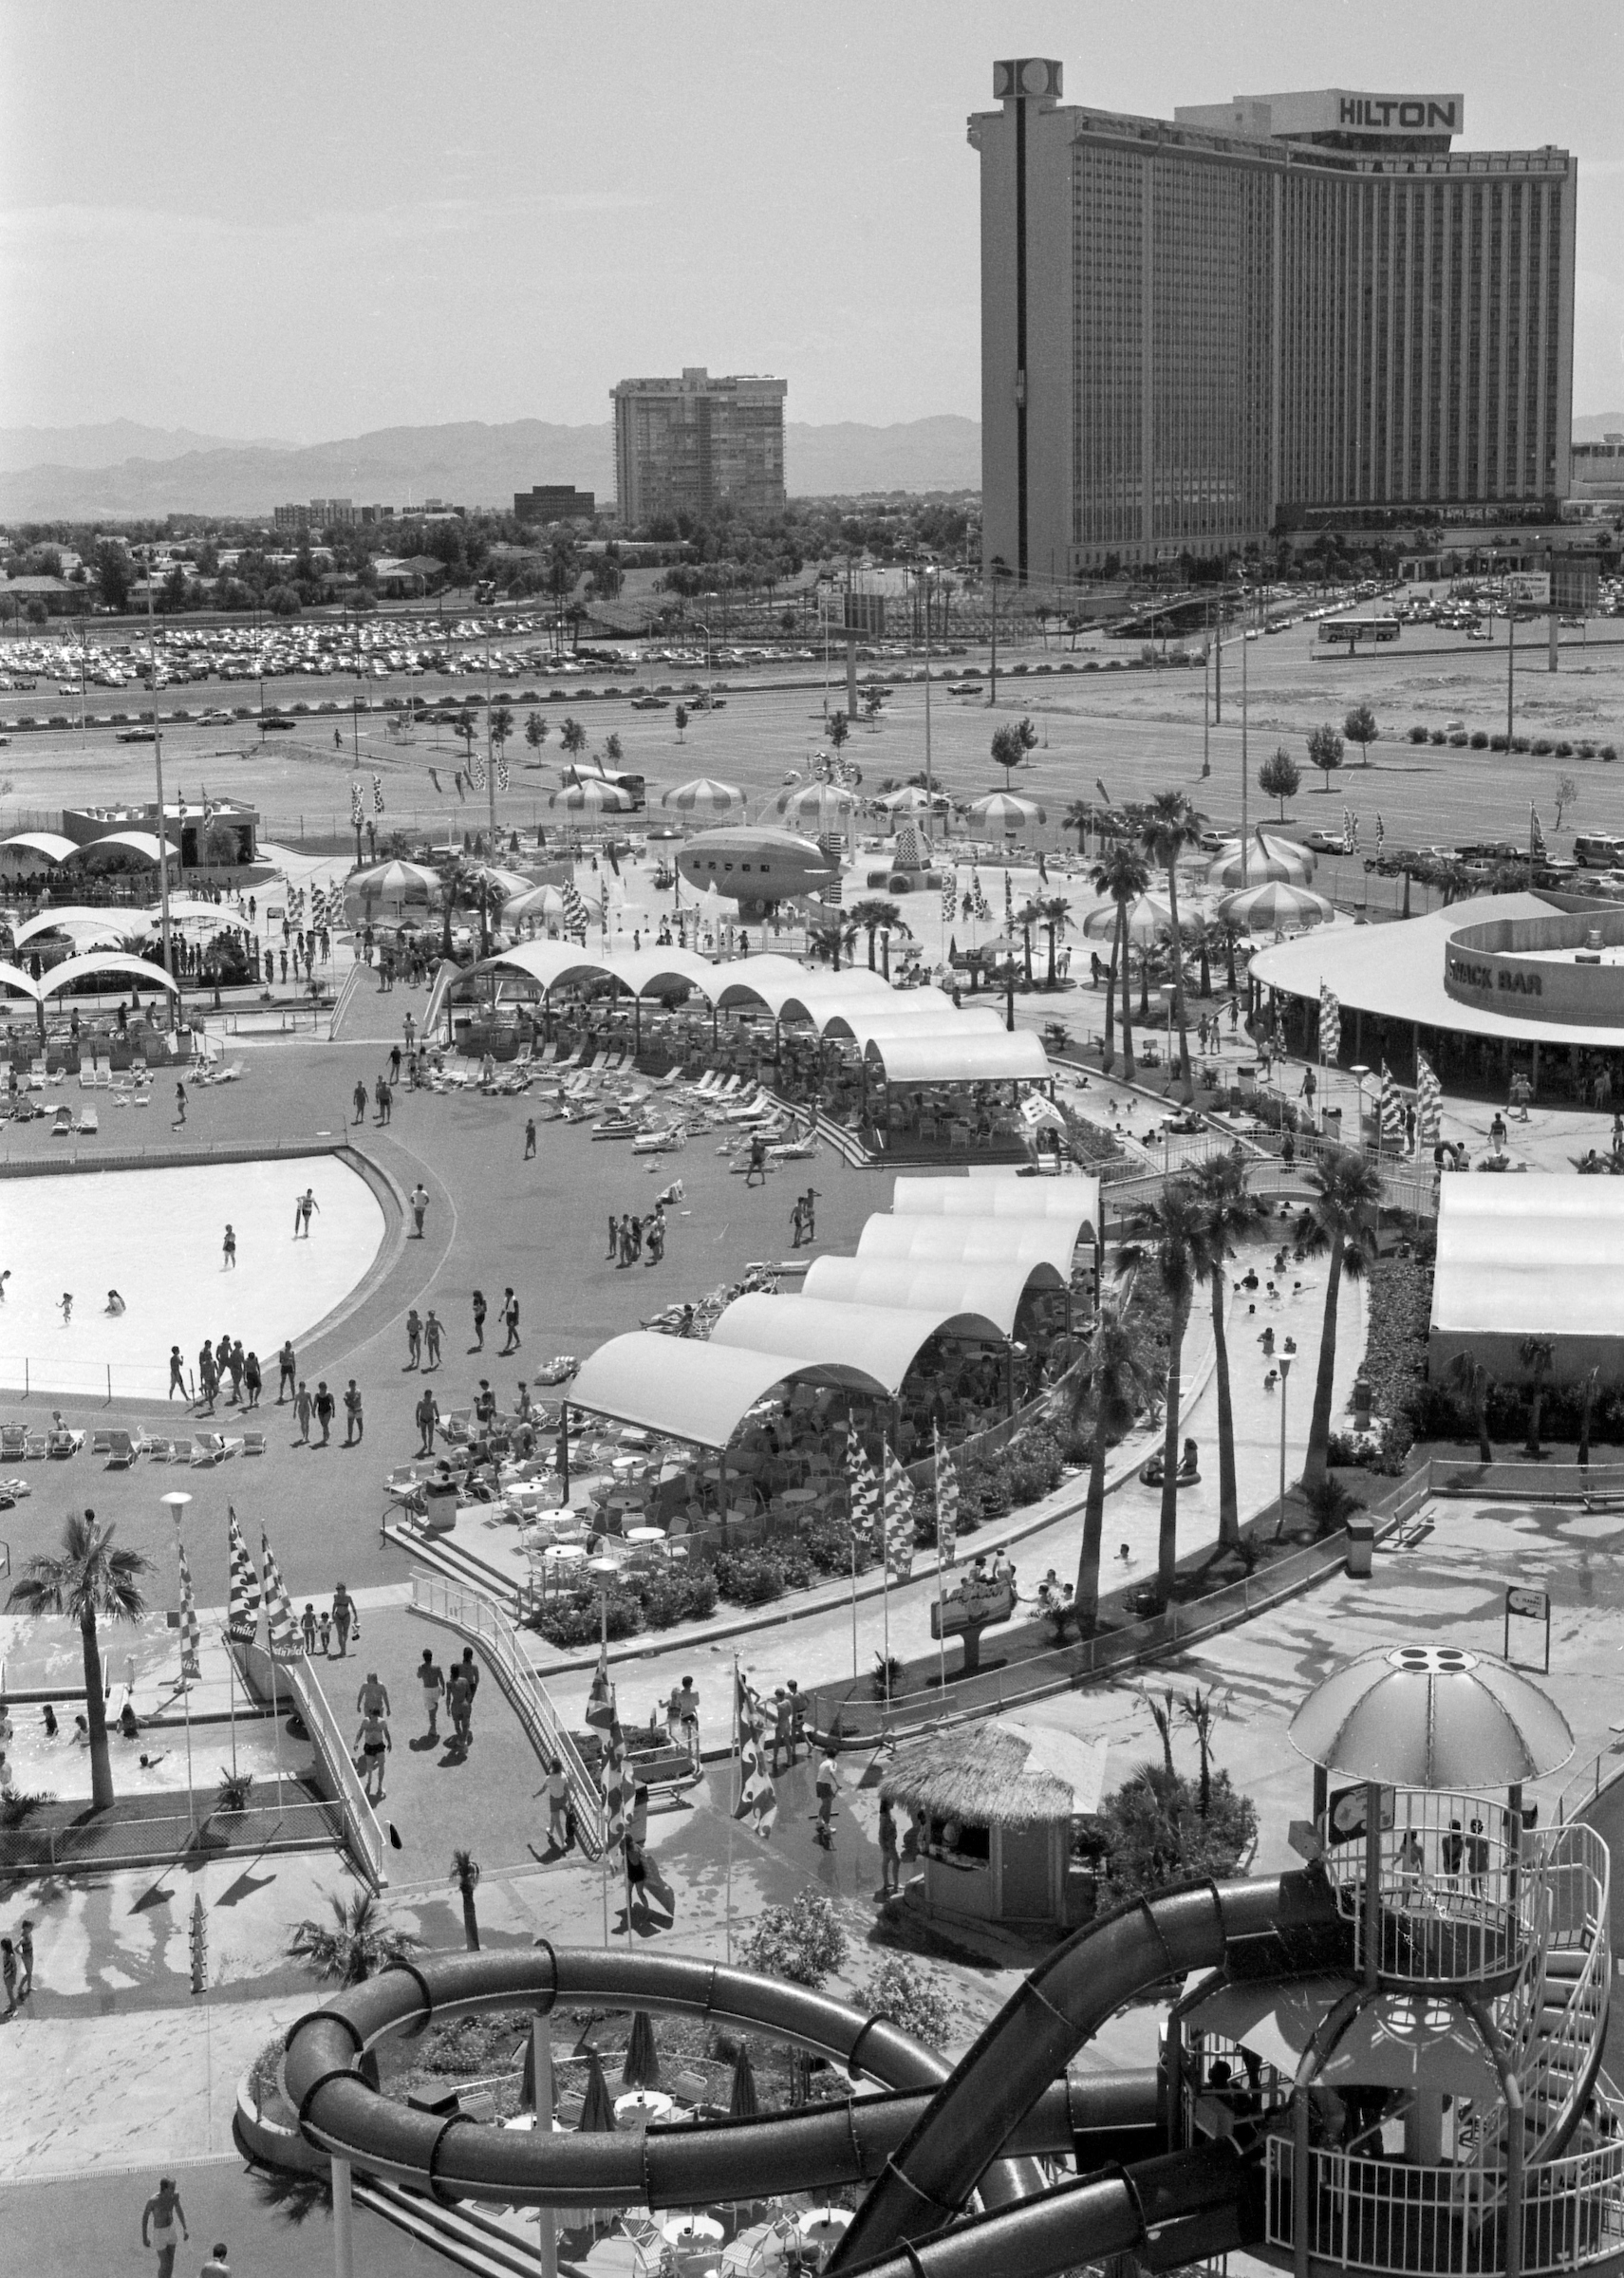 Relive memories of original Wet 'n Wild on Las Vegas Strip